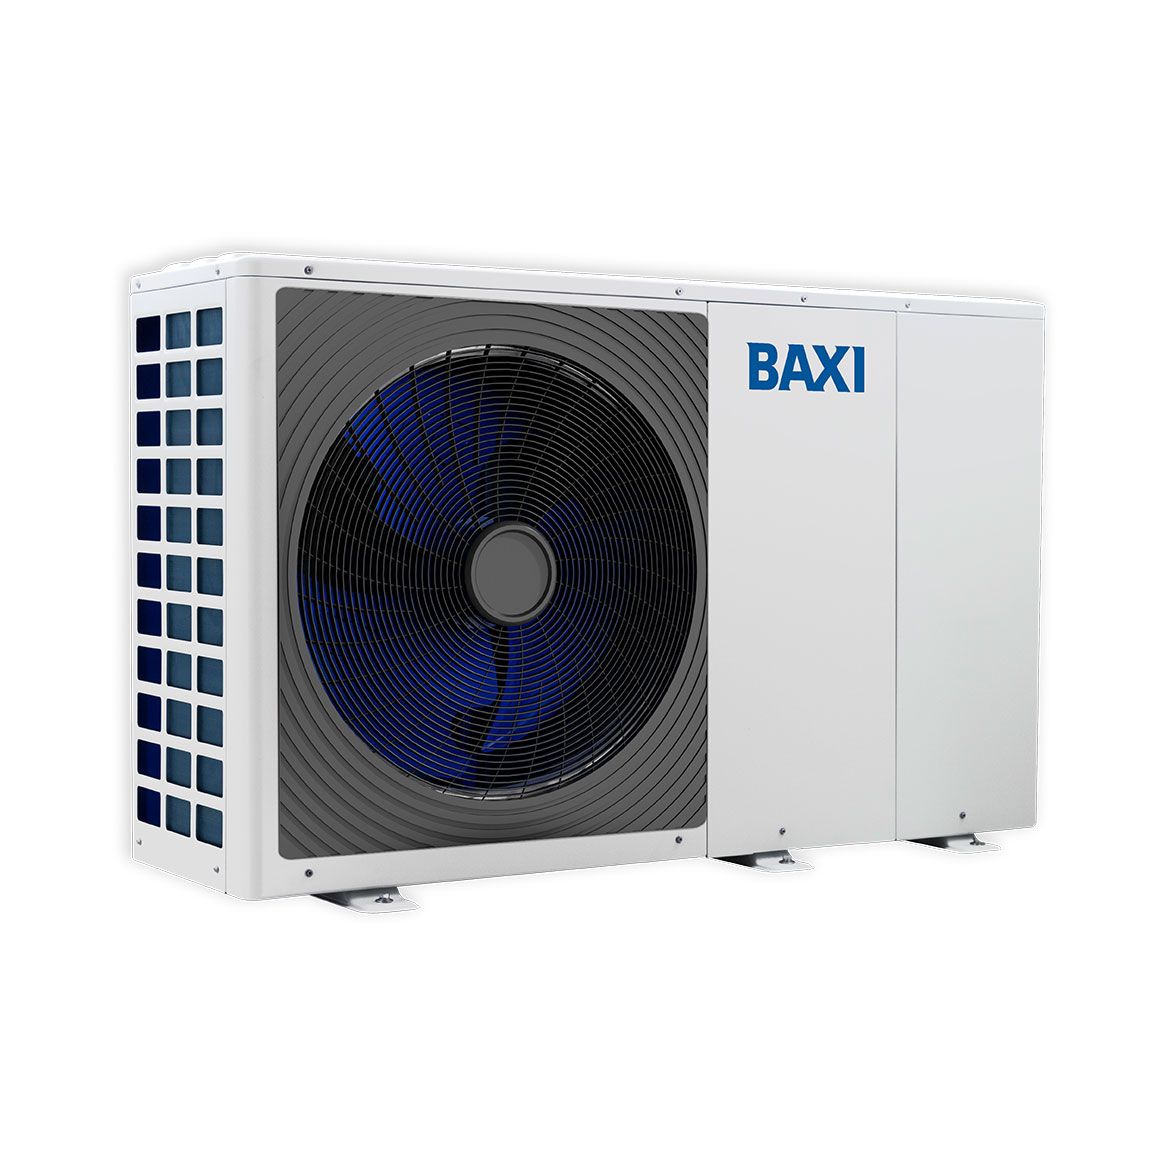 BAXI Auriga Heat Pump 10A